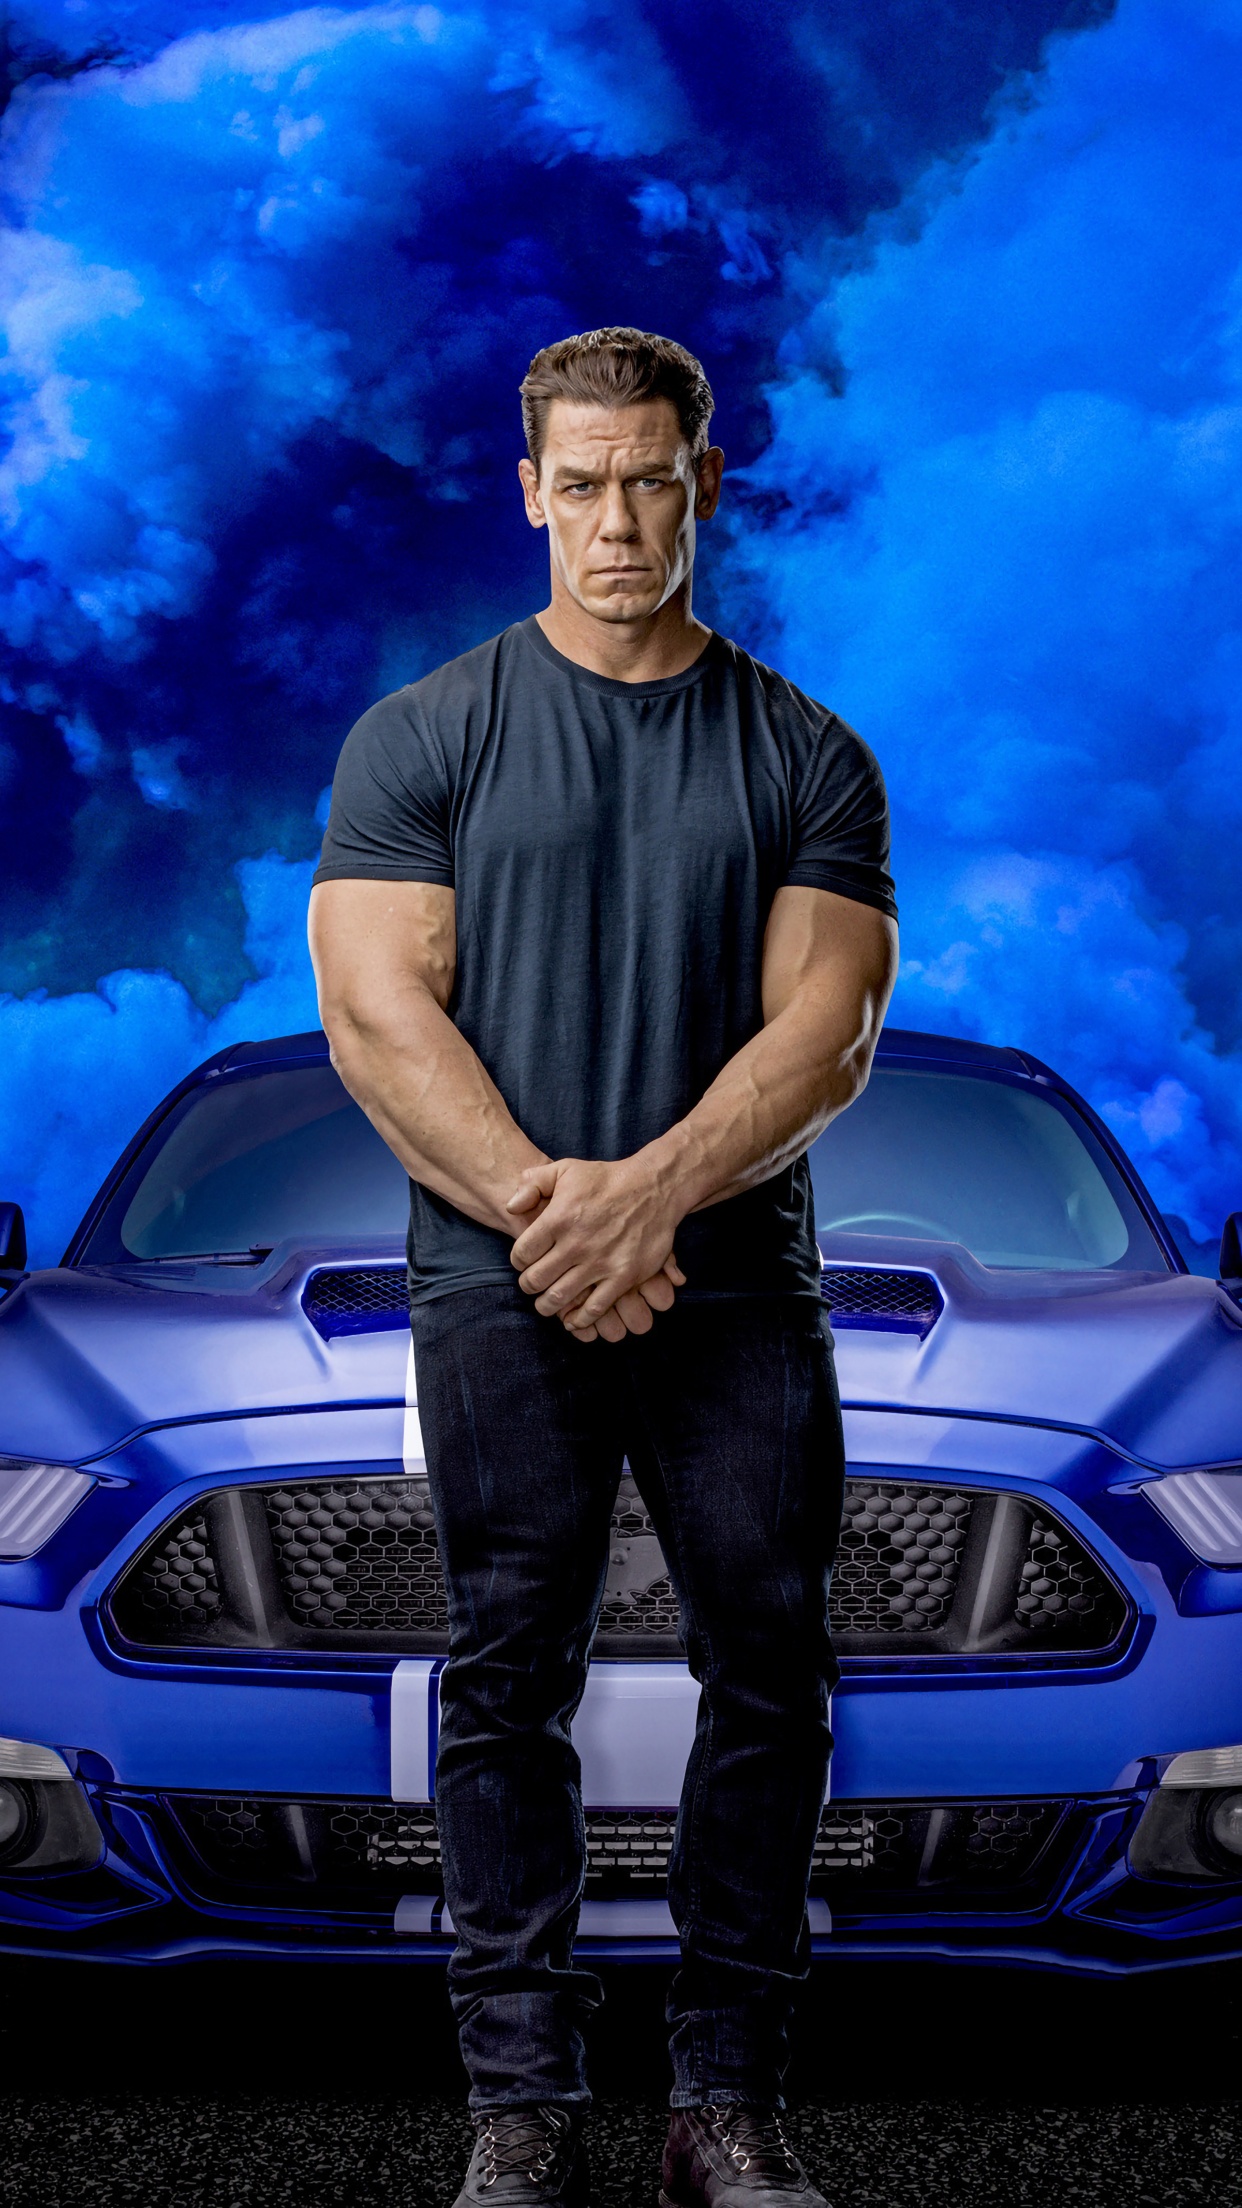 John Cena 4K Wallpaper, Fast & Furious 9, F9, 2020 Movies ...